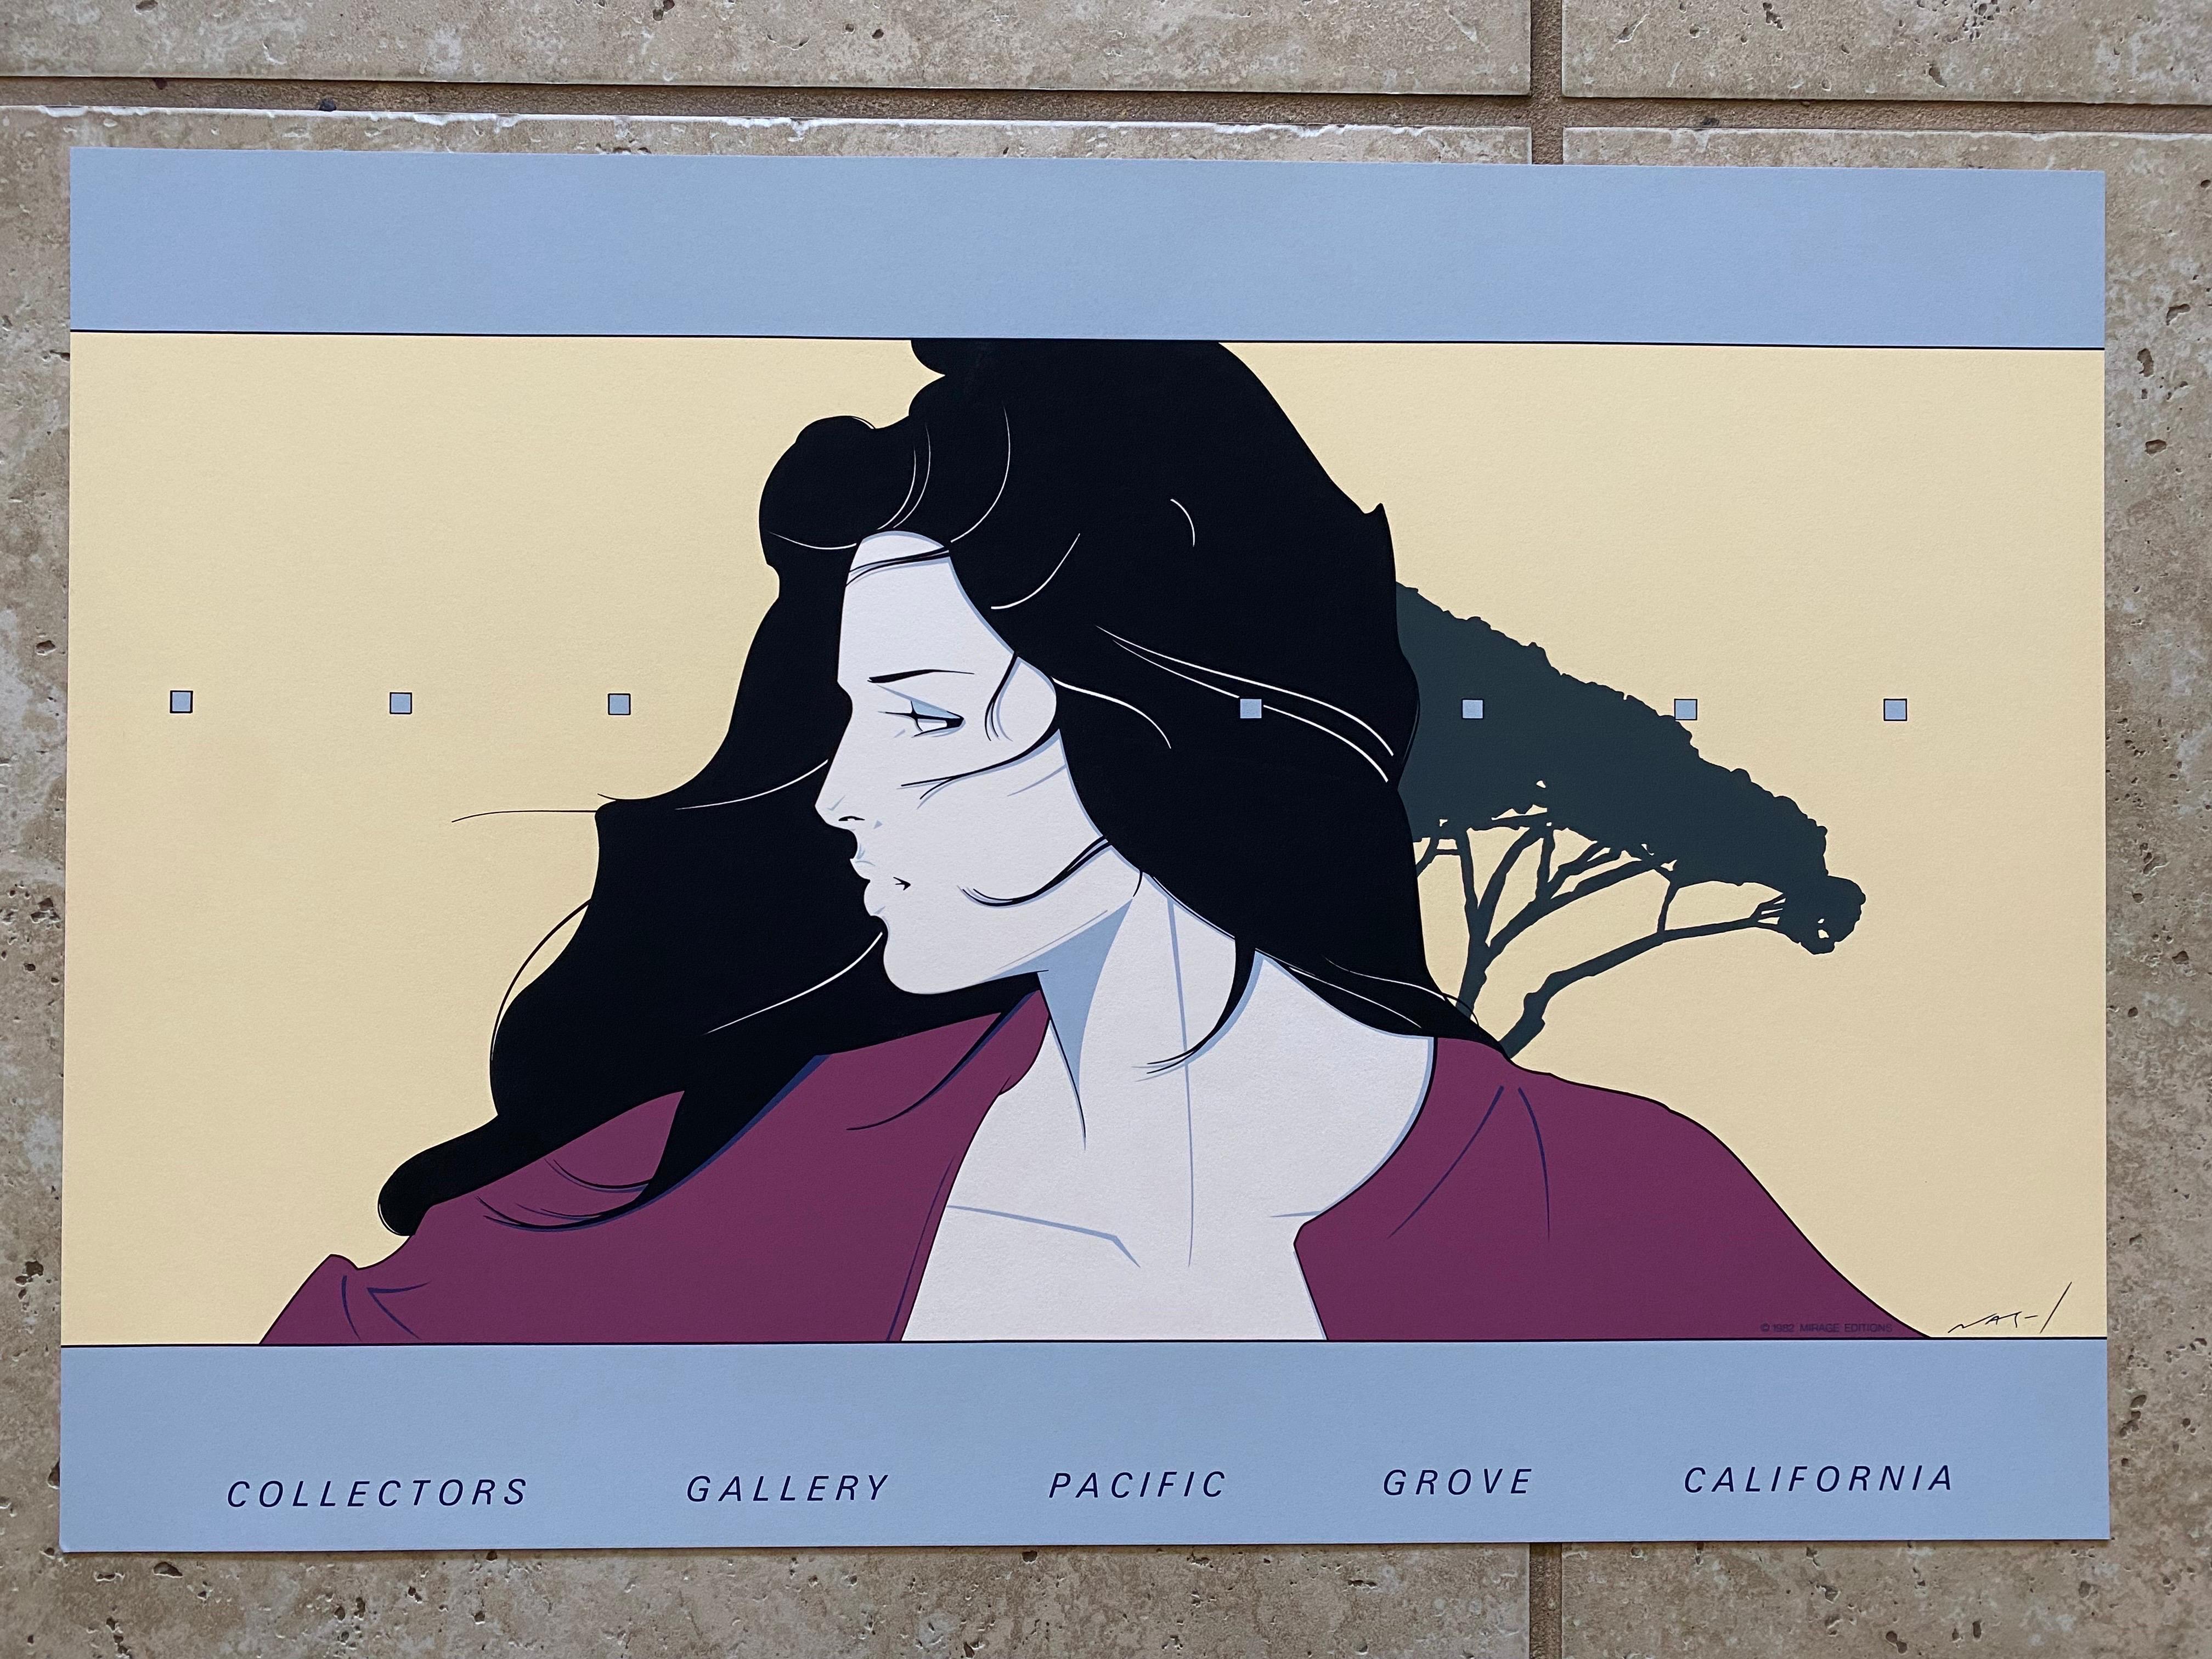 Cooler Vintage Patrick Nagel Serigraphie Druck im Jahr 1982 von Mirage Editions in Santa Monica, Ca für Collectors Gallery in Pacific Grove, CA produziert. Dieser Druck ist vom Künstler Patrick Nagel in Platte signiert.

Diese Serigrafie auf